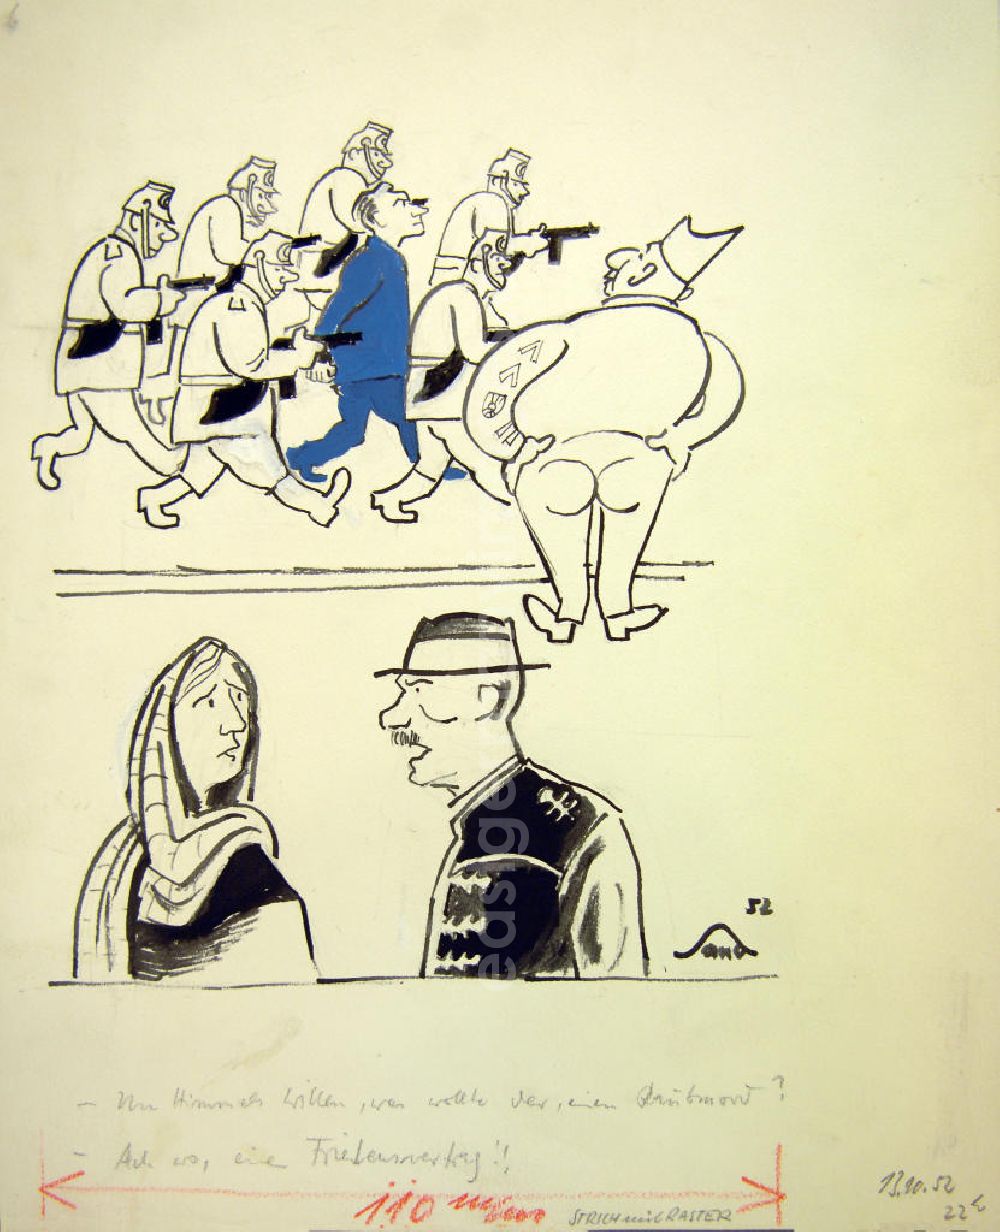 Berlin: Zeichnung von Herbert Sandberg Raubmord? aus dem Jahr 1952, 20,0x23,